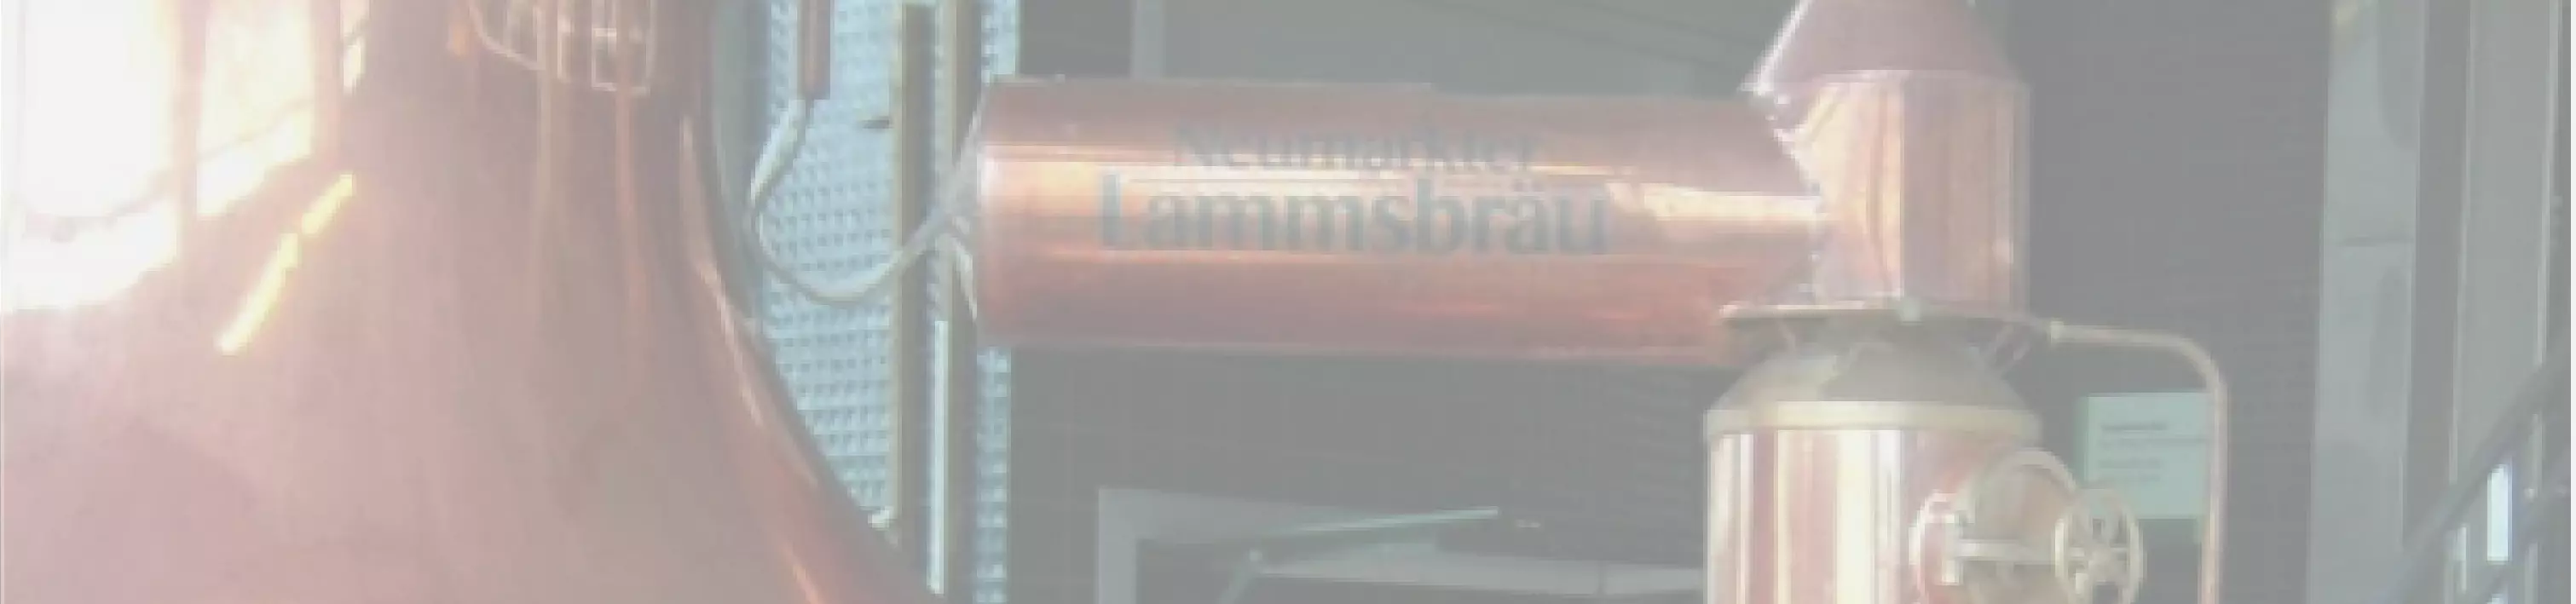 Neumarkter Lammsbräu Brewery